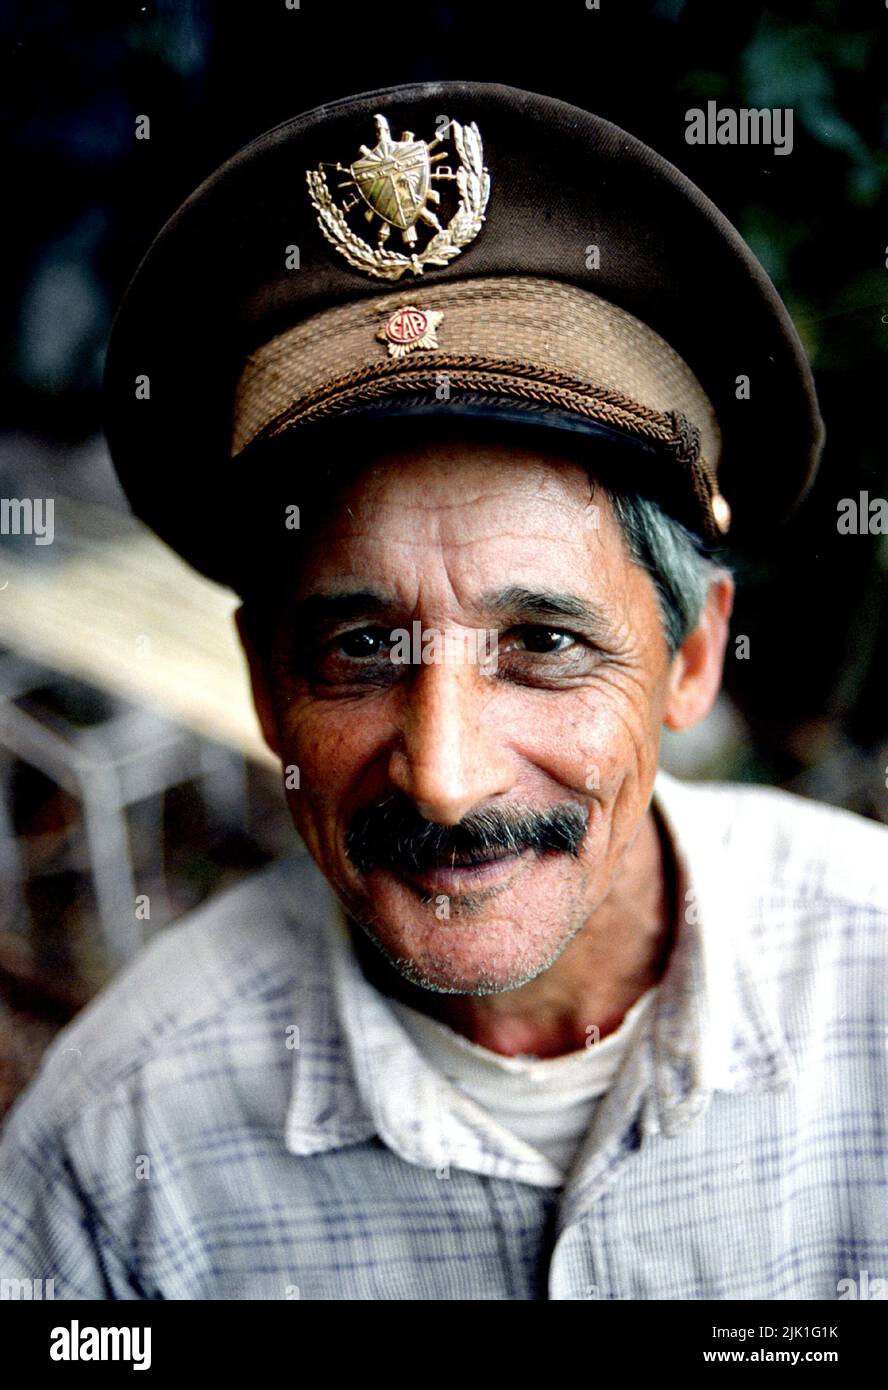 Vida cotidiana, La Habana, Cuba. Retrato del hombre con sombrero viejo. Foto de stock